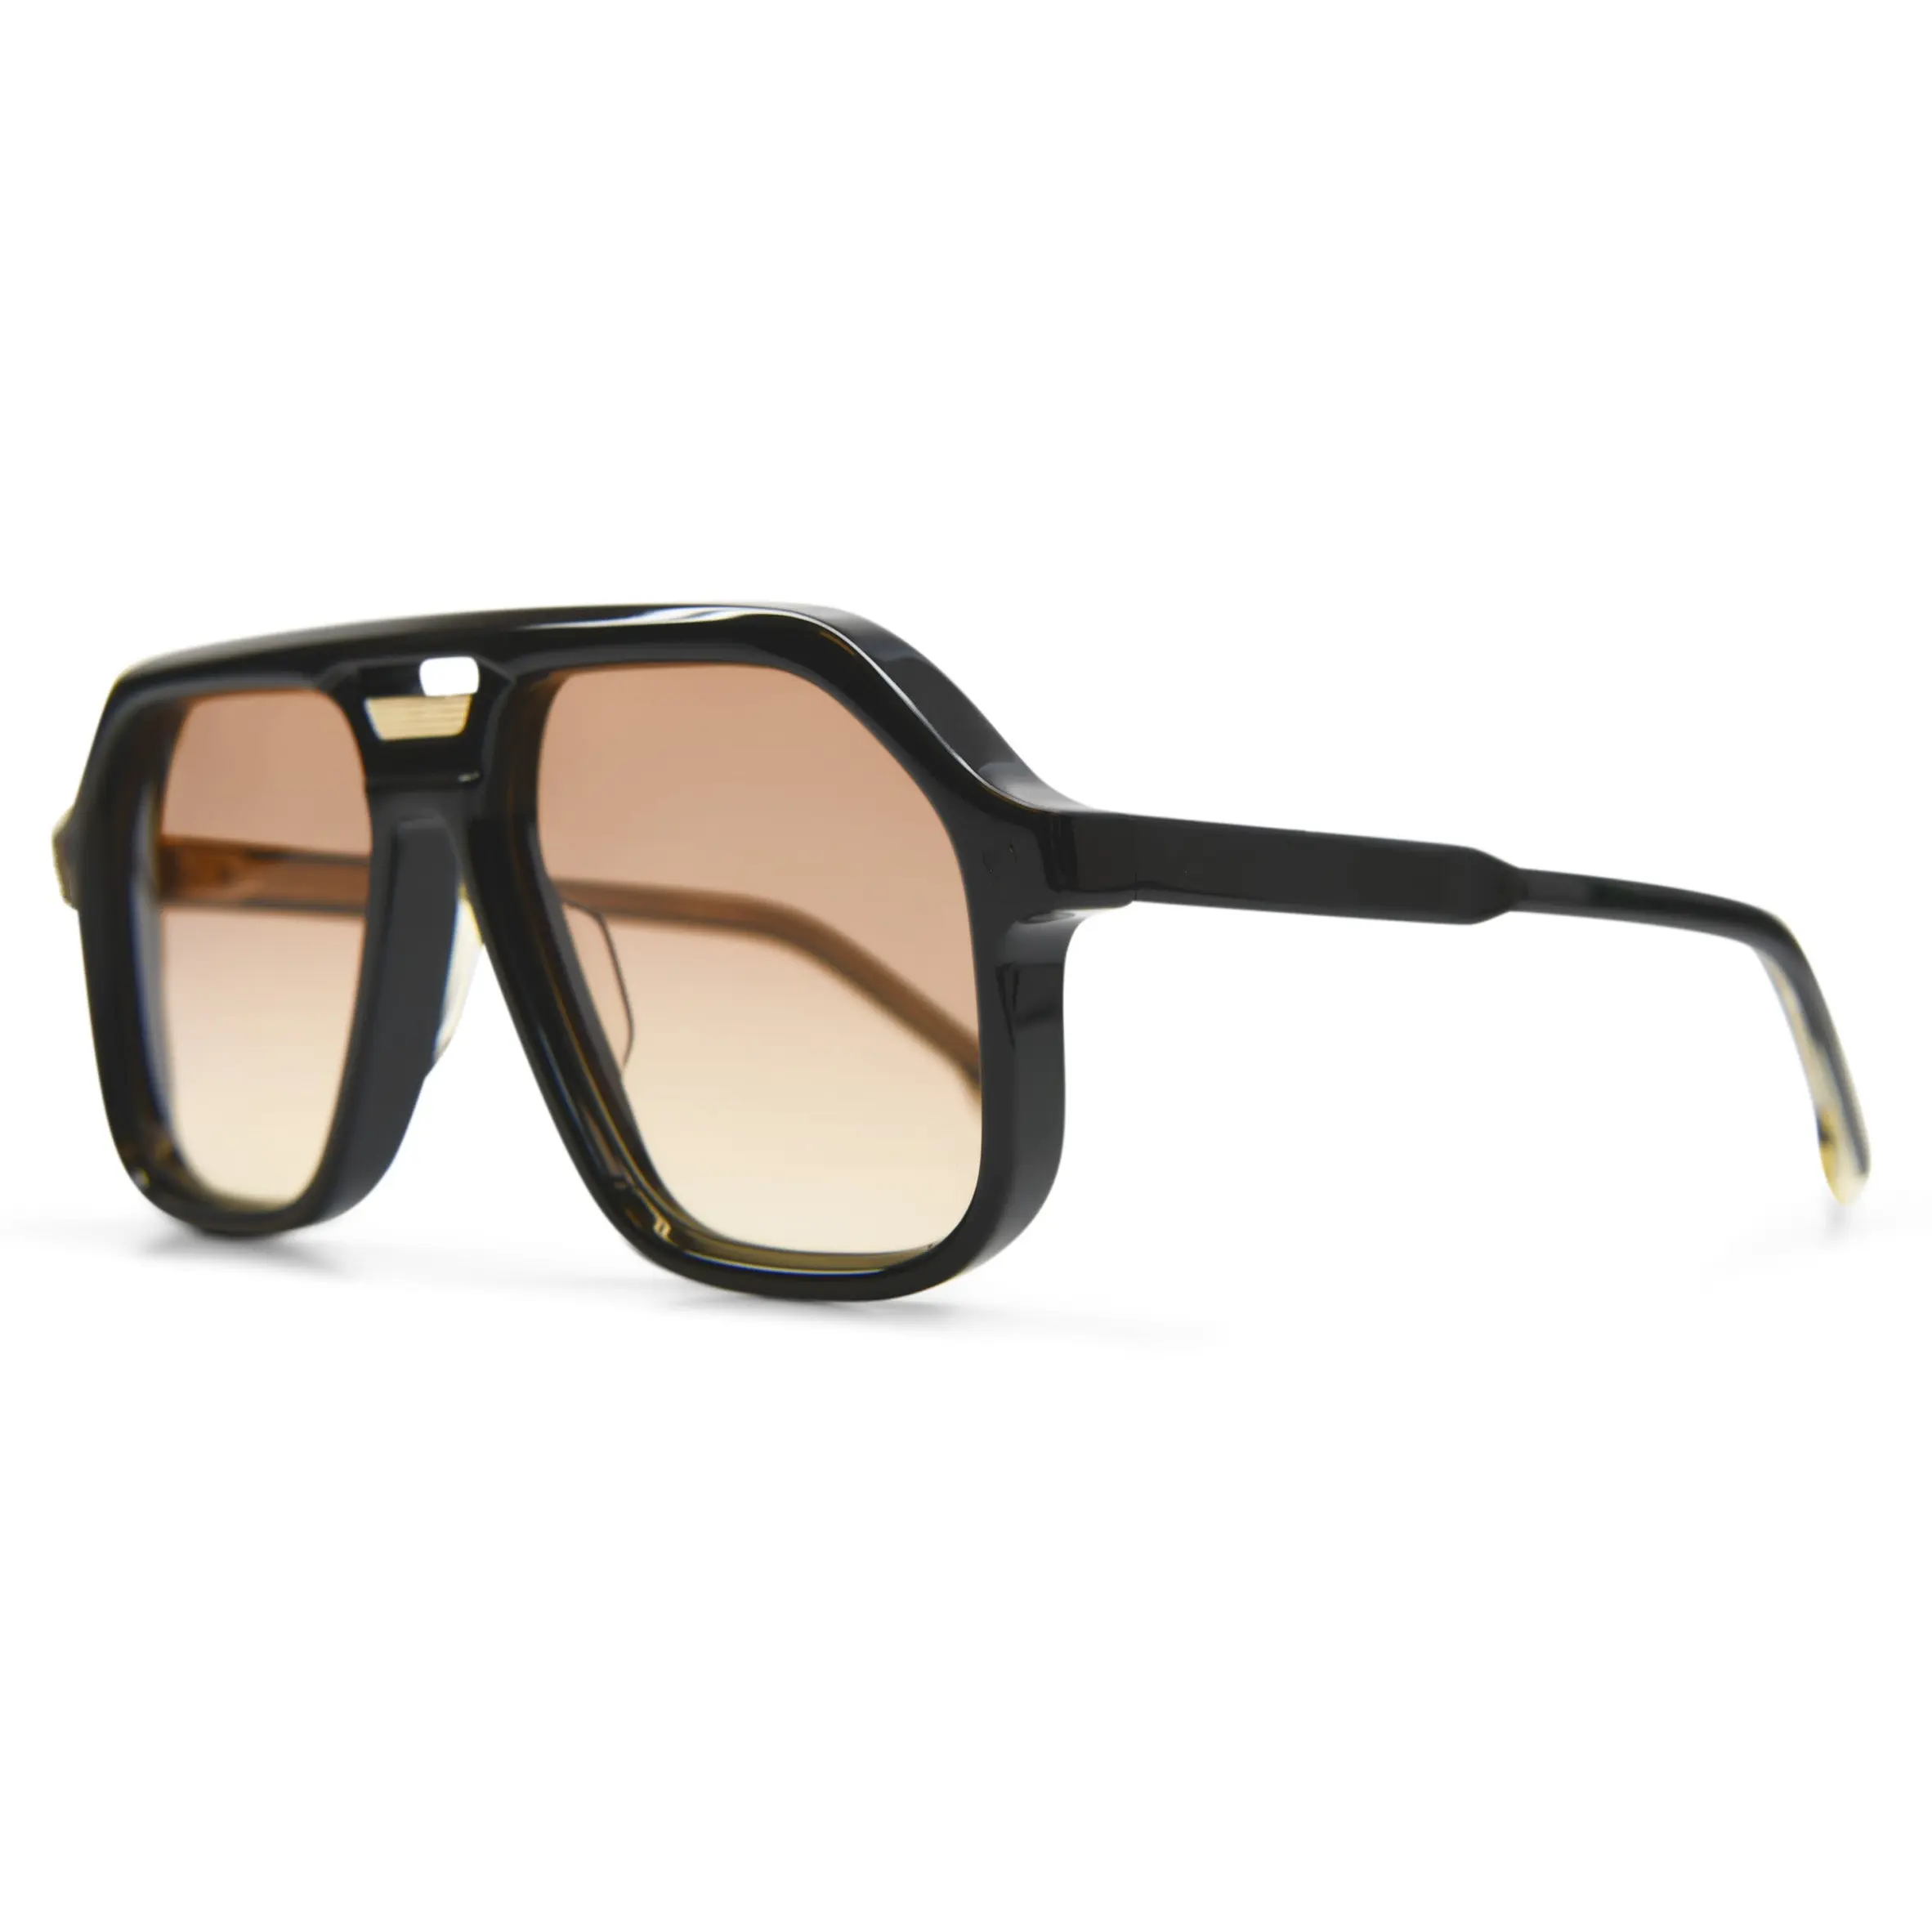 LMA Large Frames Customized Metal Logo Shades Brand Designer Fashion Oversized Acetate Sunglasses Polarized for Men Women